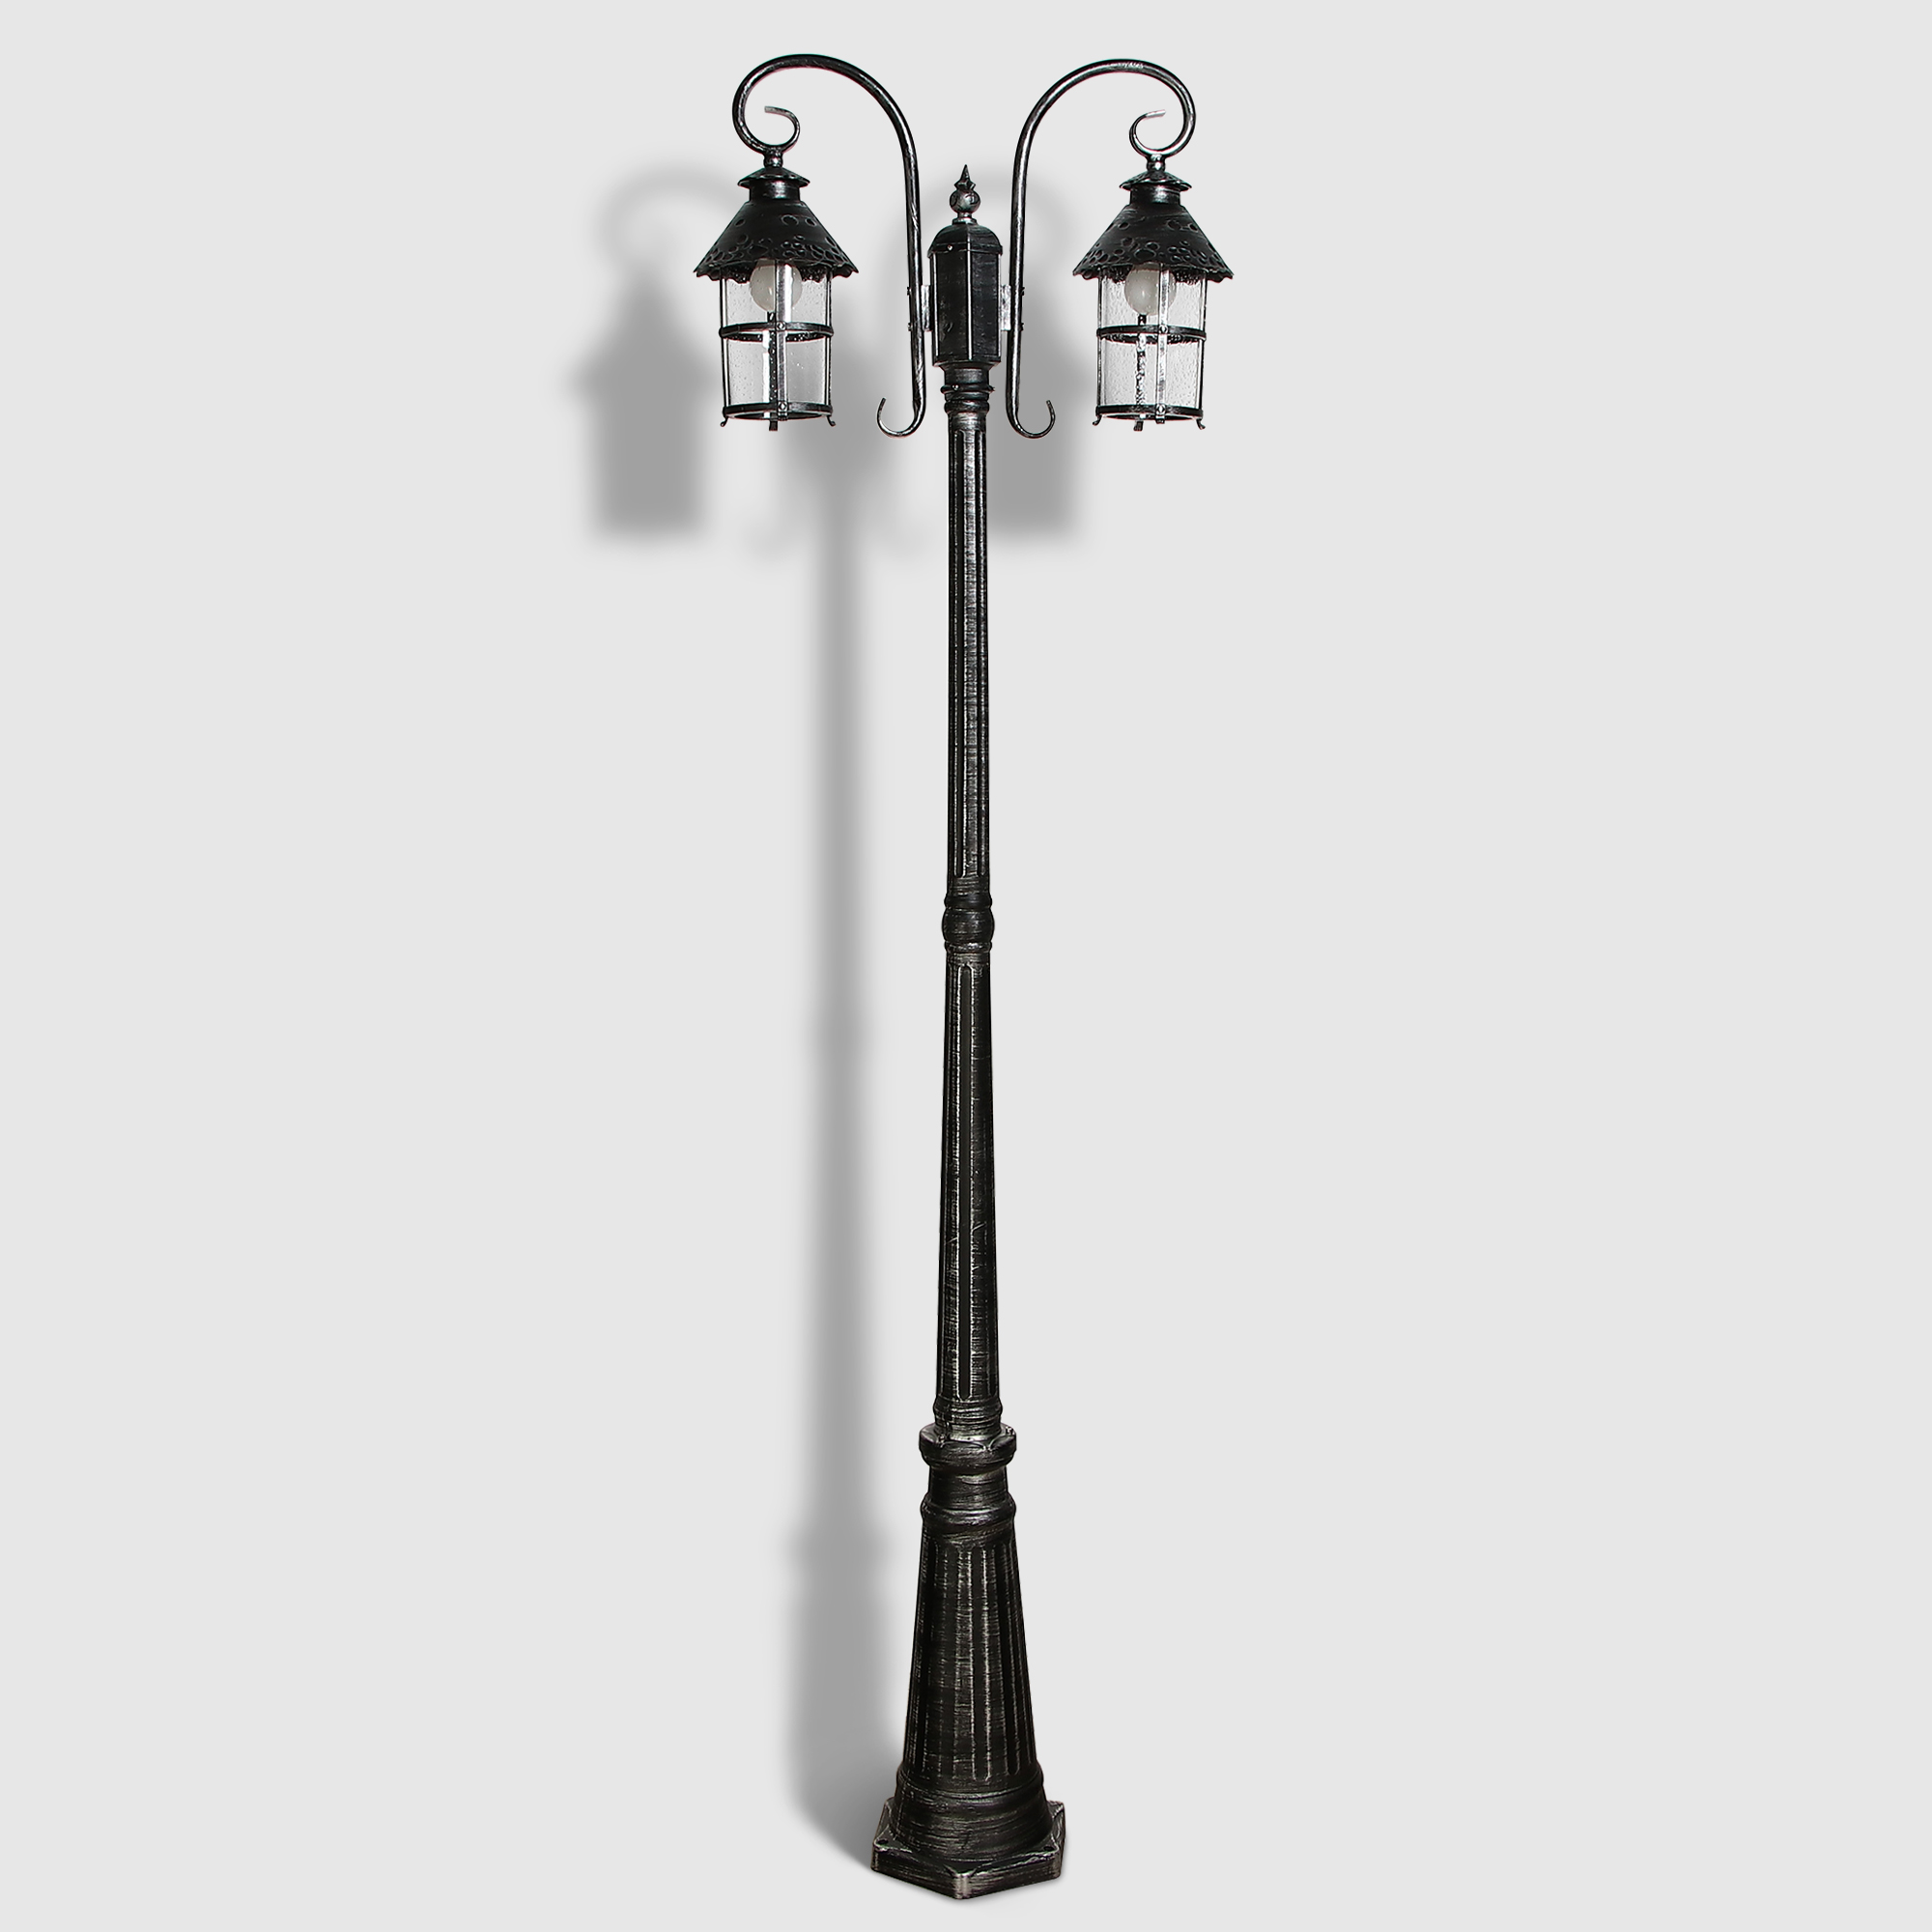 Светильник садовый Amber Lamp 9732-POLE 10 напольный IP44 E27 100Вт, черное серебро уличный напольный светильник eglo